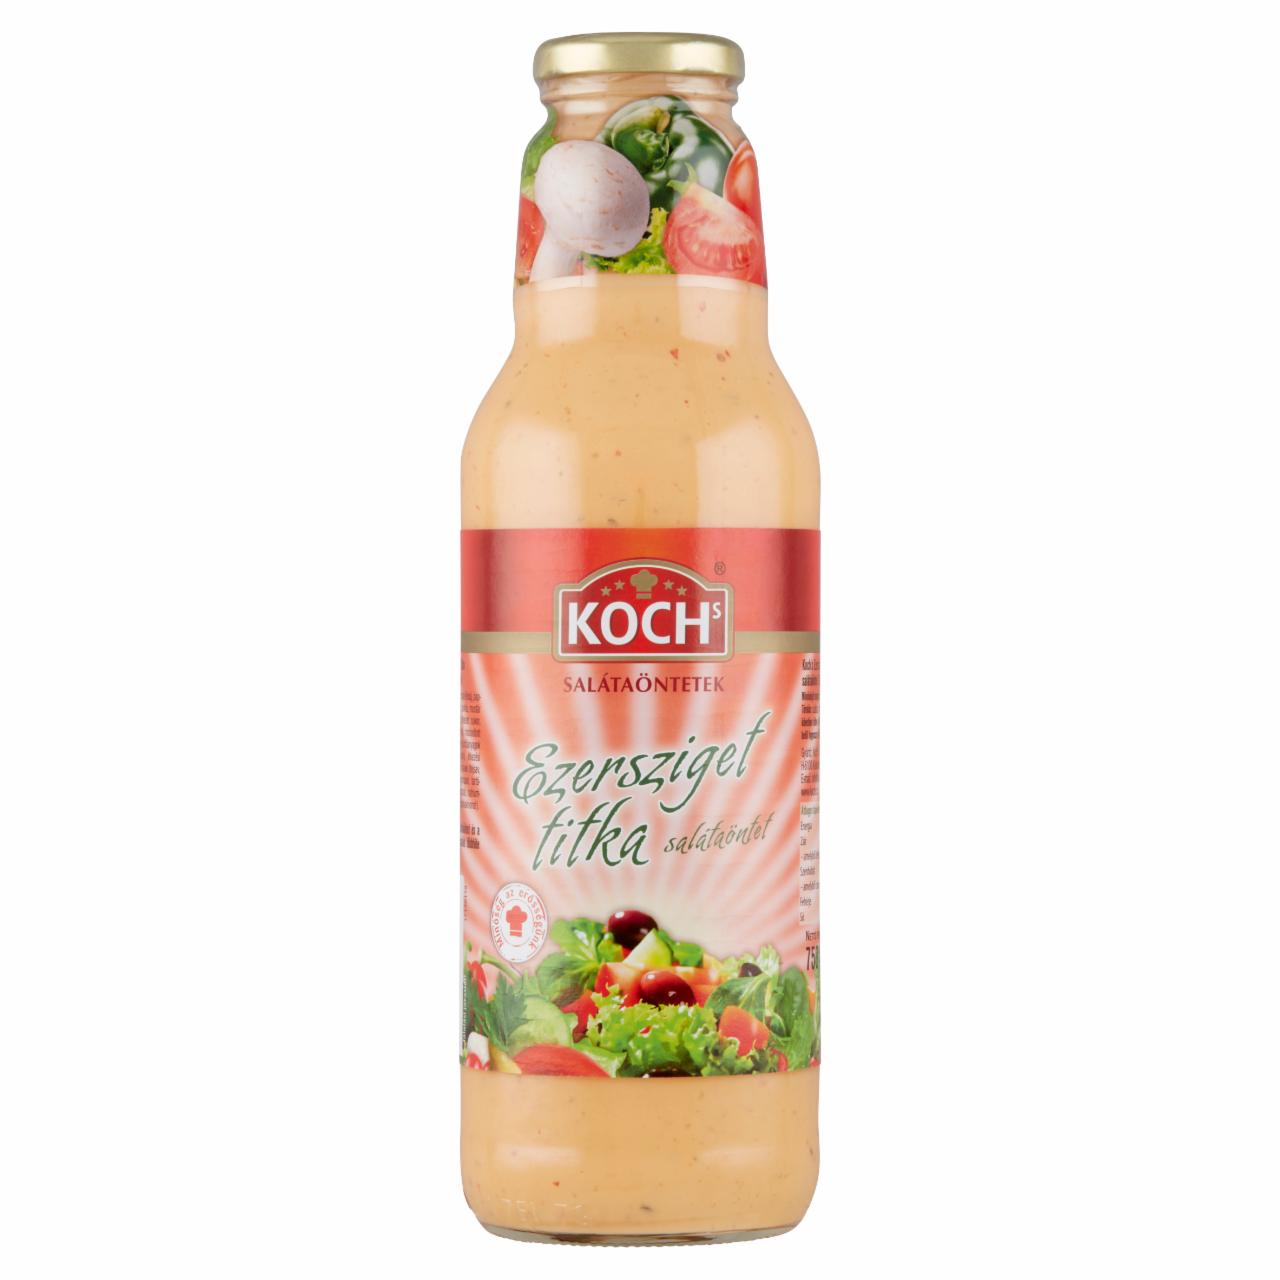 Képek - Koch's Ezersziget Titka salátaöntet 750 ml